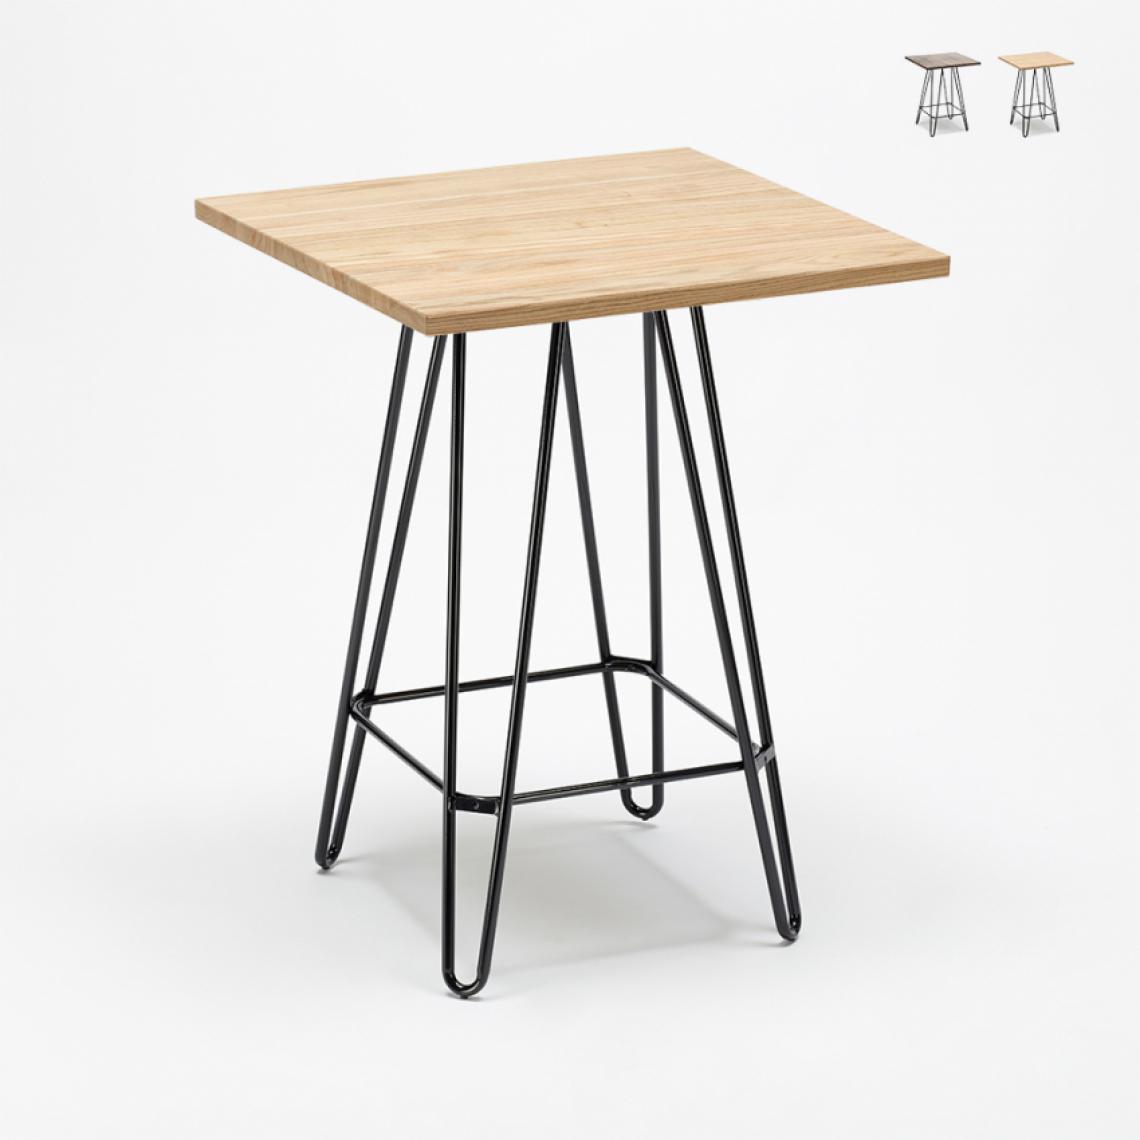 Ahd Amazing Home Design - Table haute industrielle pour tabourets 60x60 métal acier bois Bolt, Couleur: Beige - Tables à manger